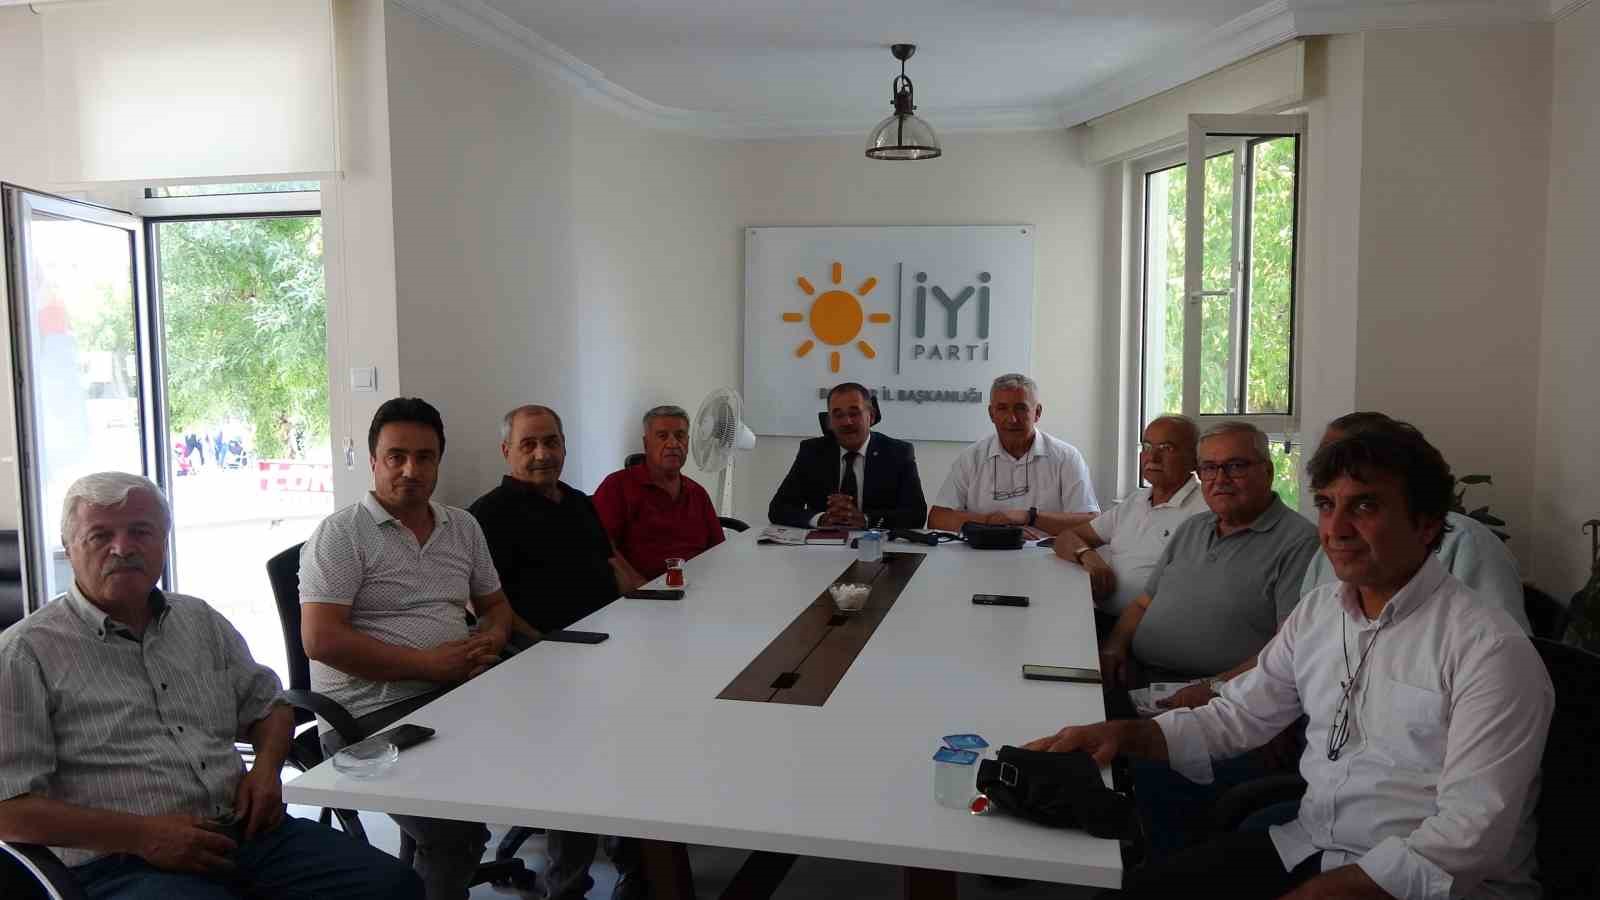 Burdur’da belediye ile İYİ Parti arasında arsa satışı tartışması